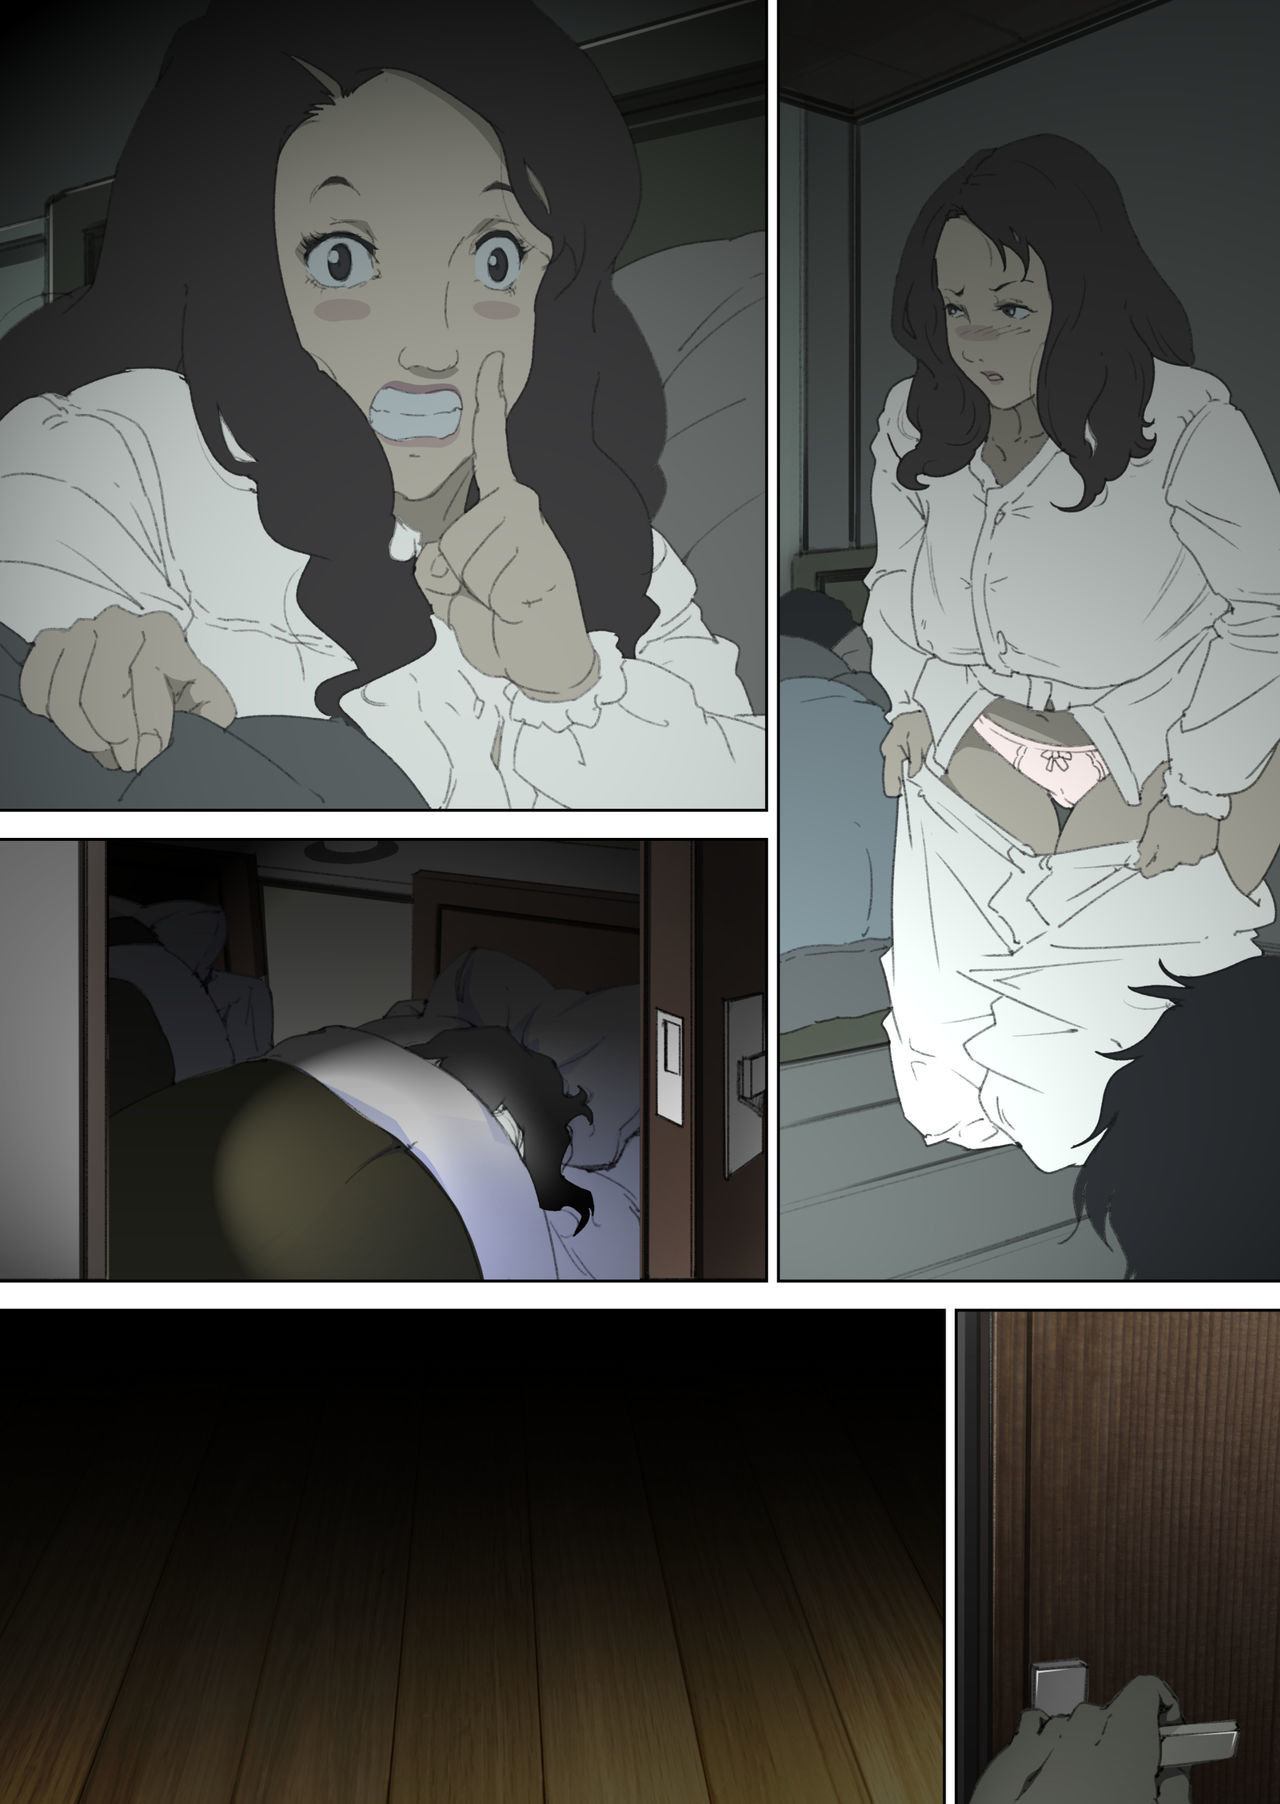 Escabullendome en el dormitorio donde duermen mis padres - Junk Kameyoko - 38